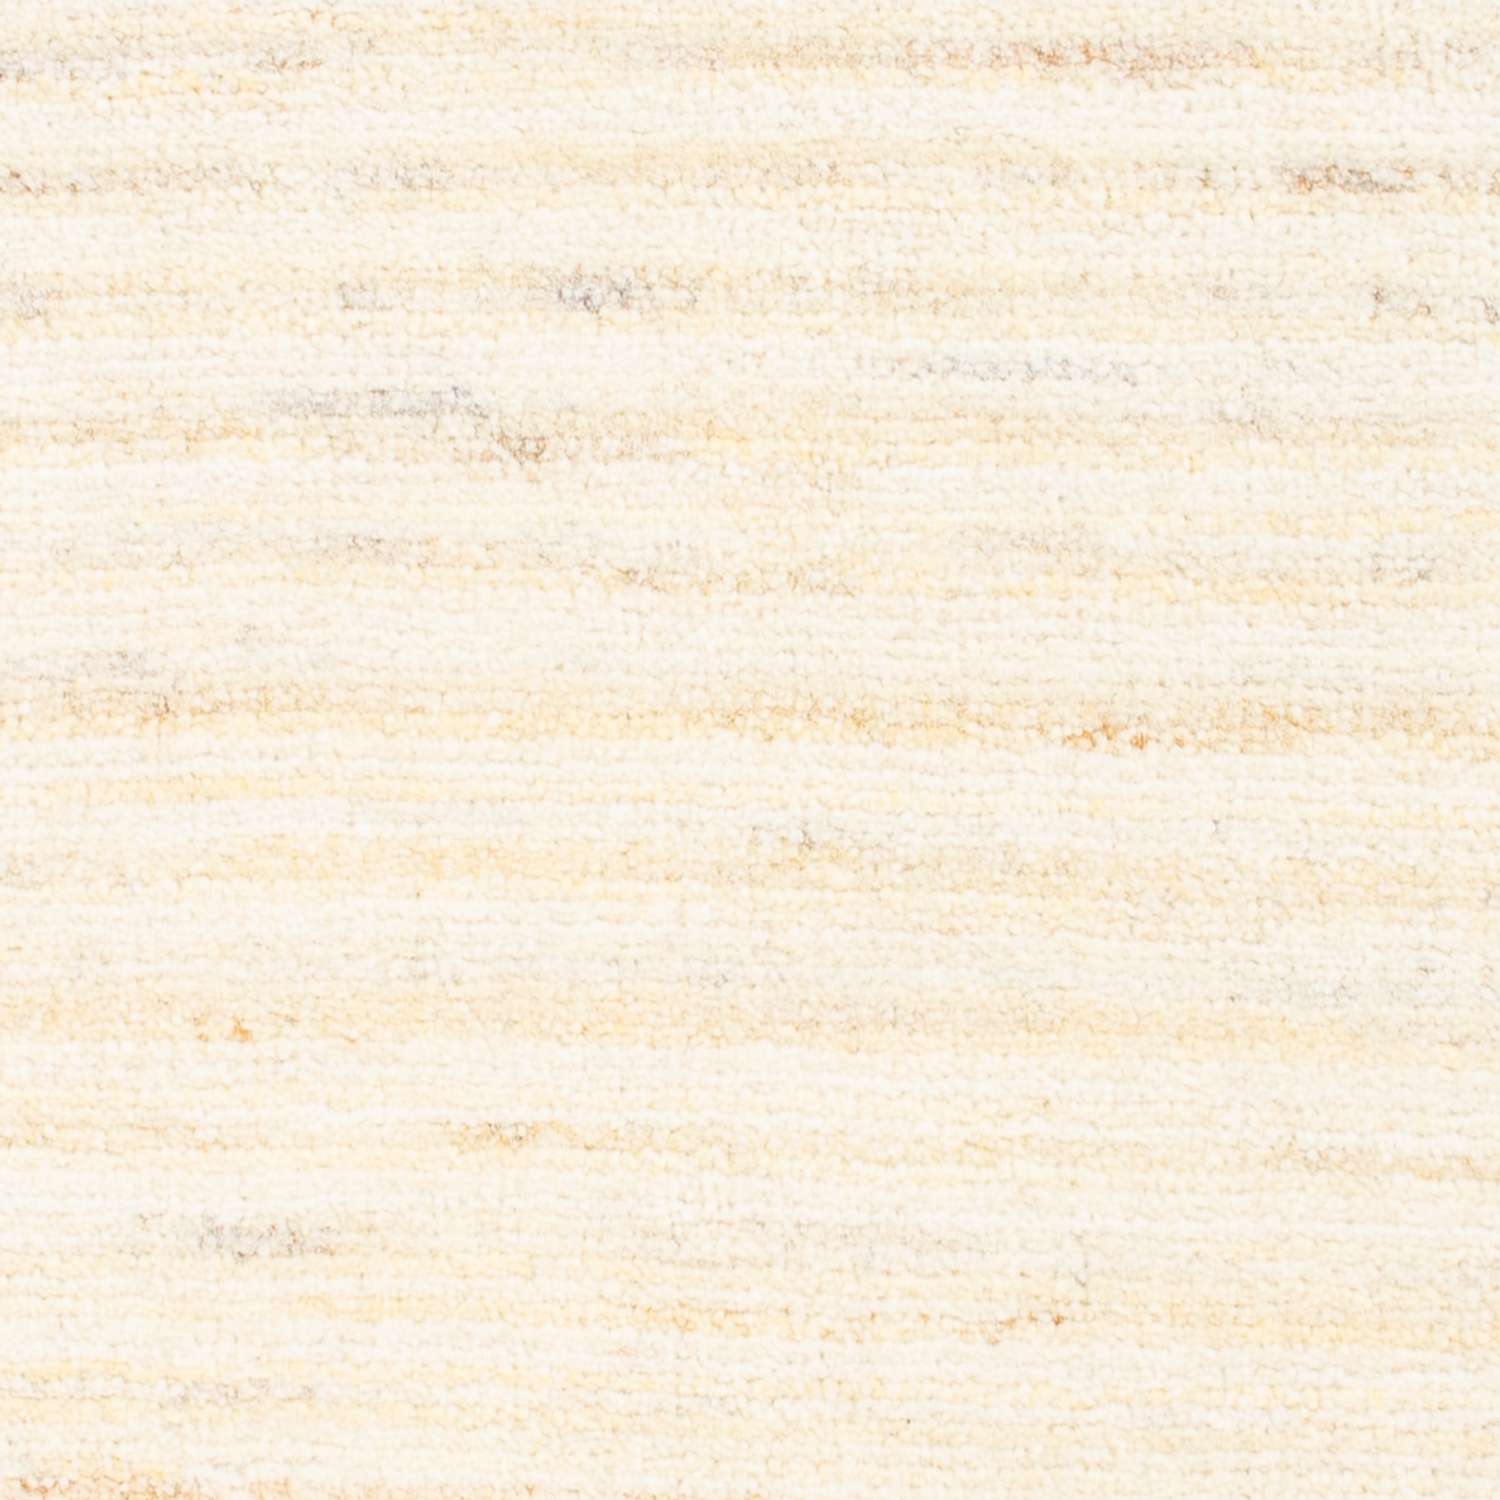 Gabbeh tapijt - Perzisch - 86 x 60 cm - beige